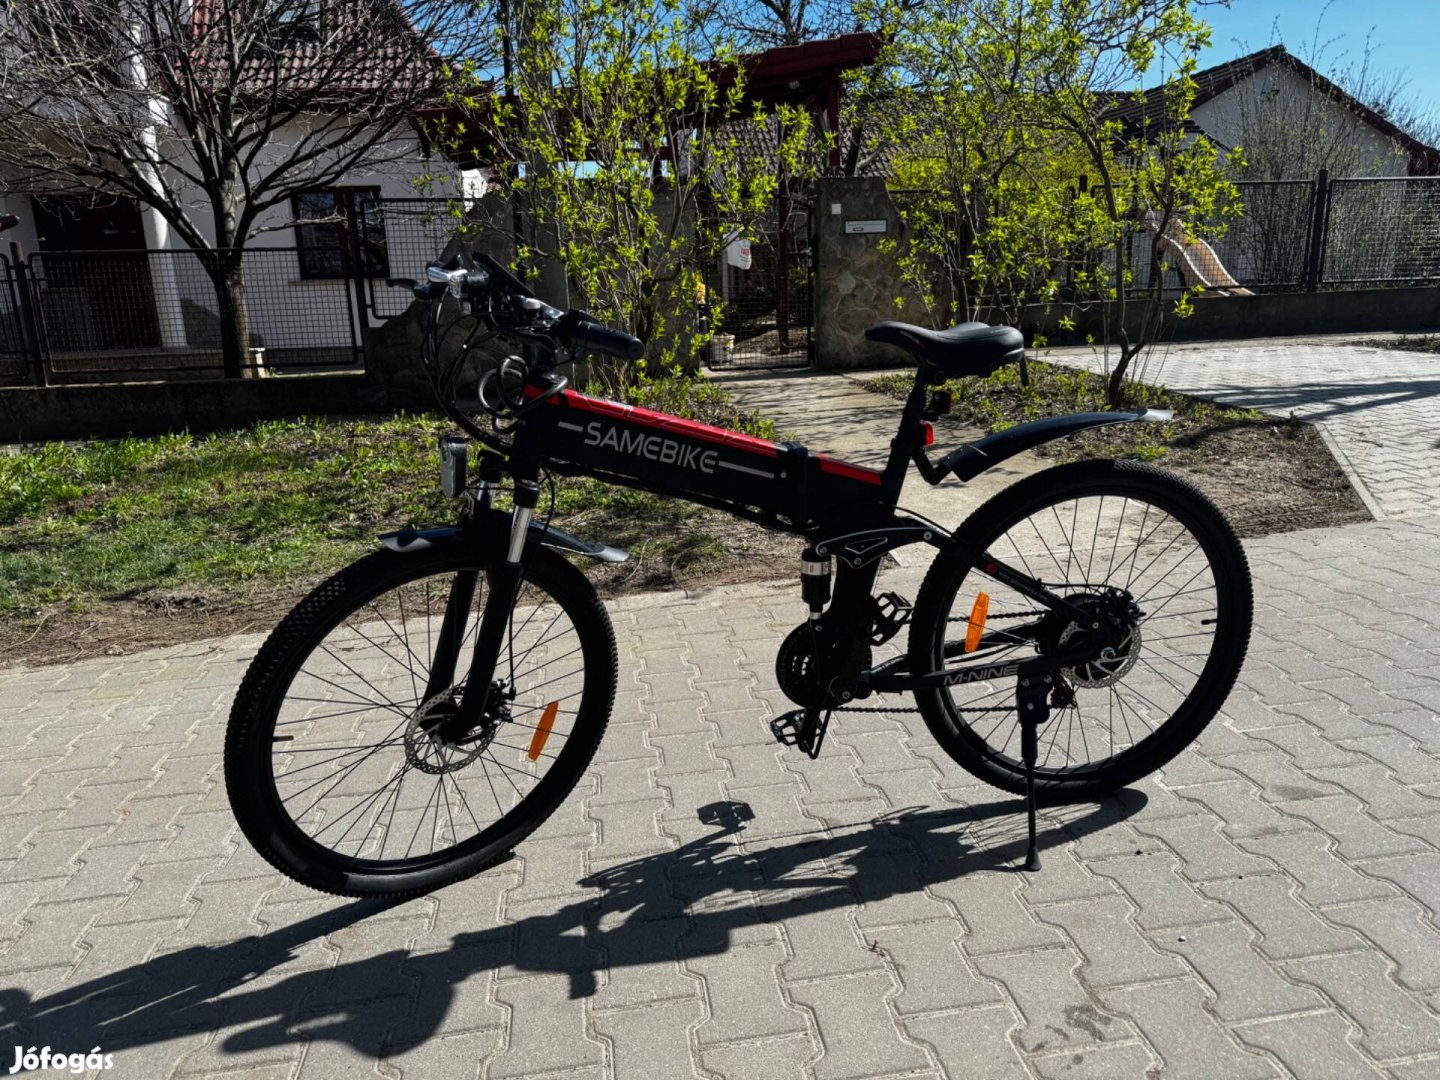 Samebike e-Bike kerékpár, pedelec bicikli eladó